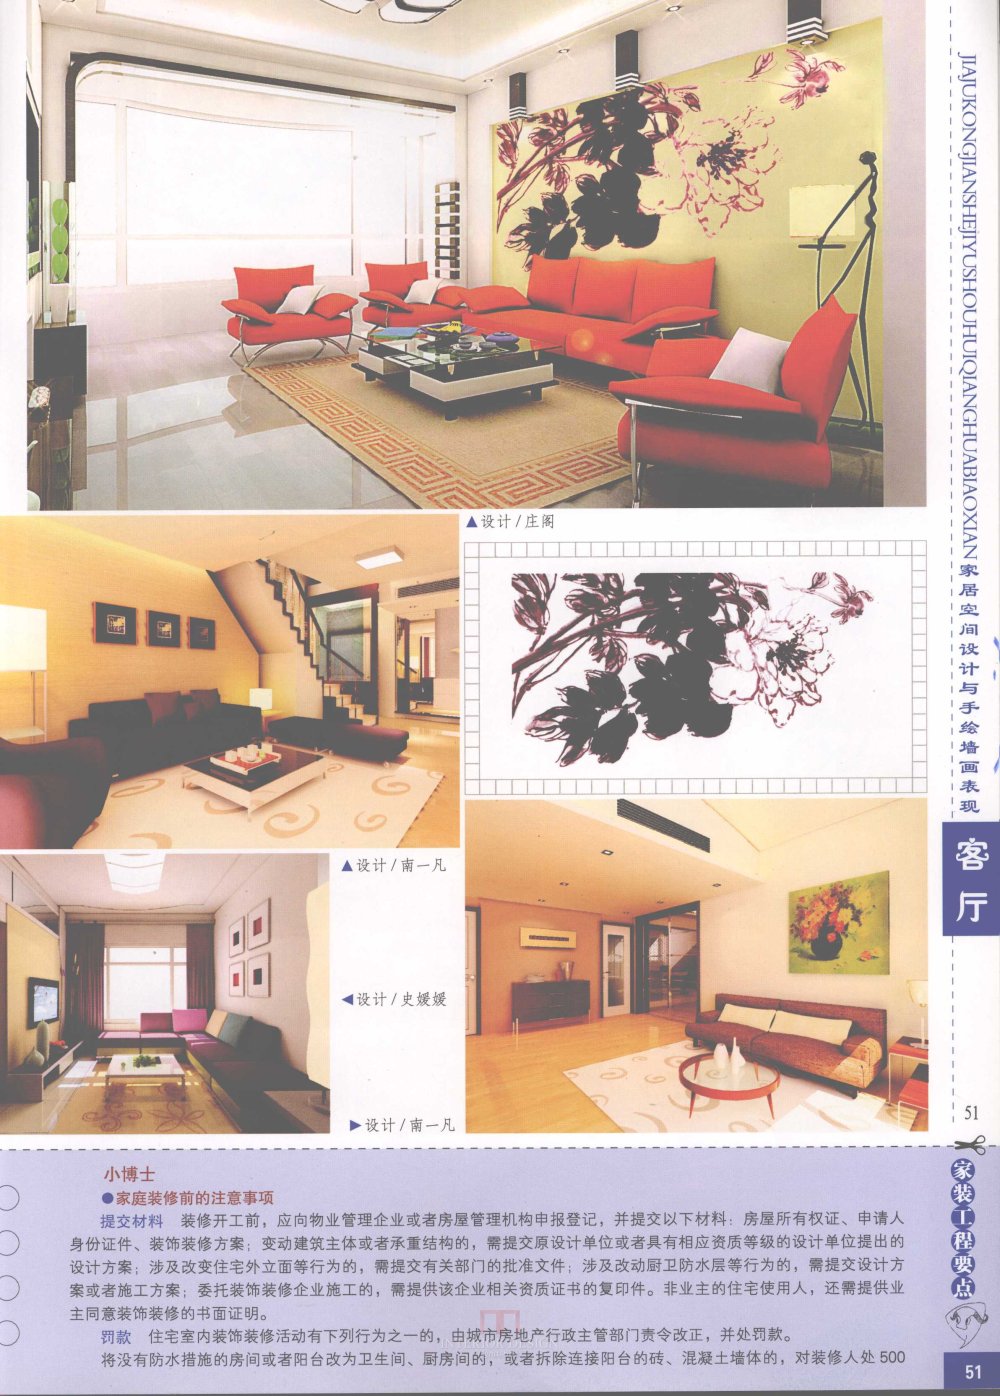 家居空间设计与手绘墙画表现客厅_家居空间设计与手绘墙画表现客厅-53.jpg